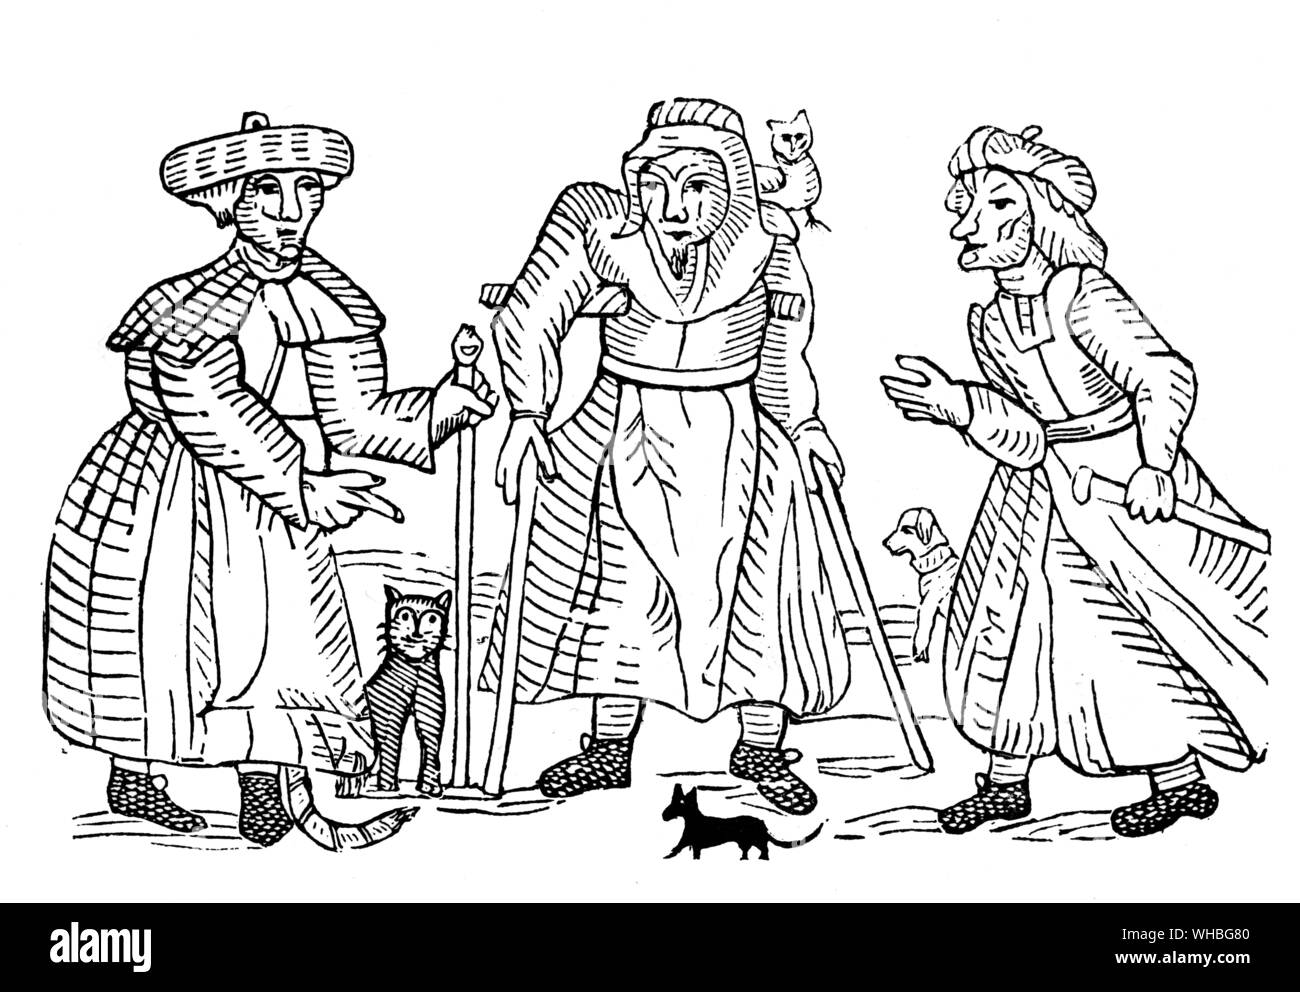 Les Sorcières de Belvoir. Aide Baker, Joan Willimot, Ellen Green à partir d'une vieille brochure publiée en 1619 Banque D'Images